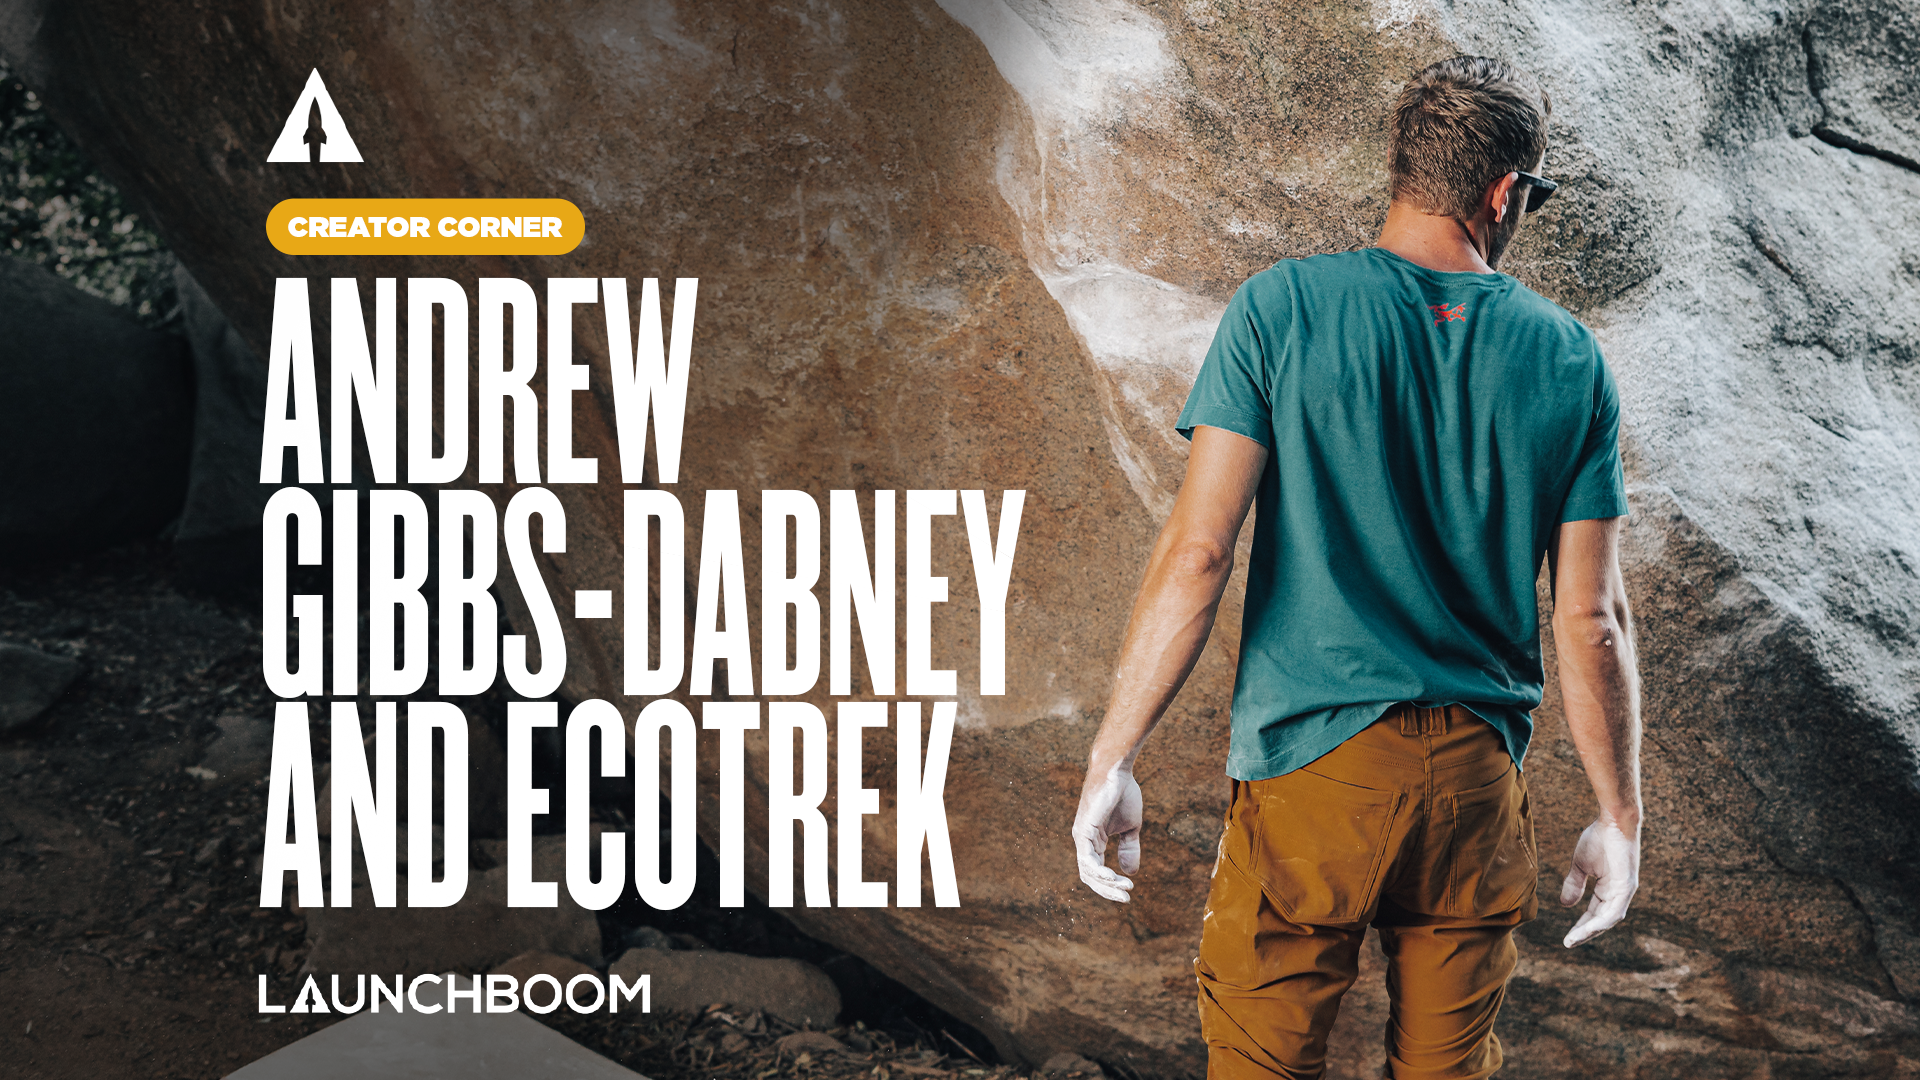 Creator Corner: Andrew Gibbs-Dabney and EcoTrek